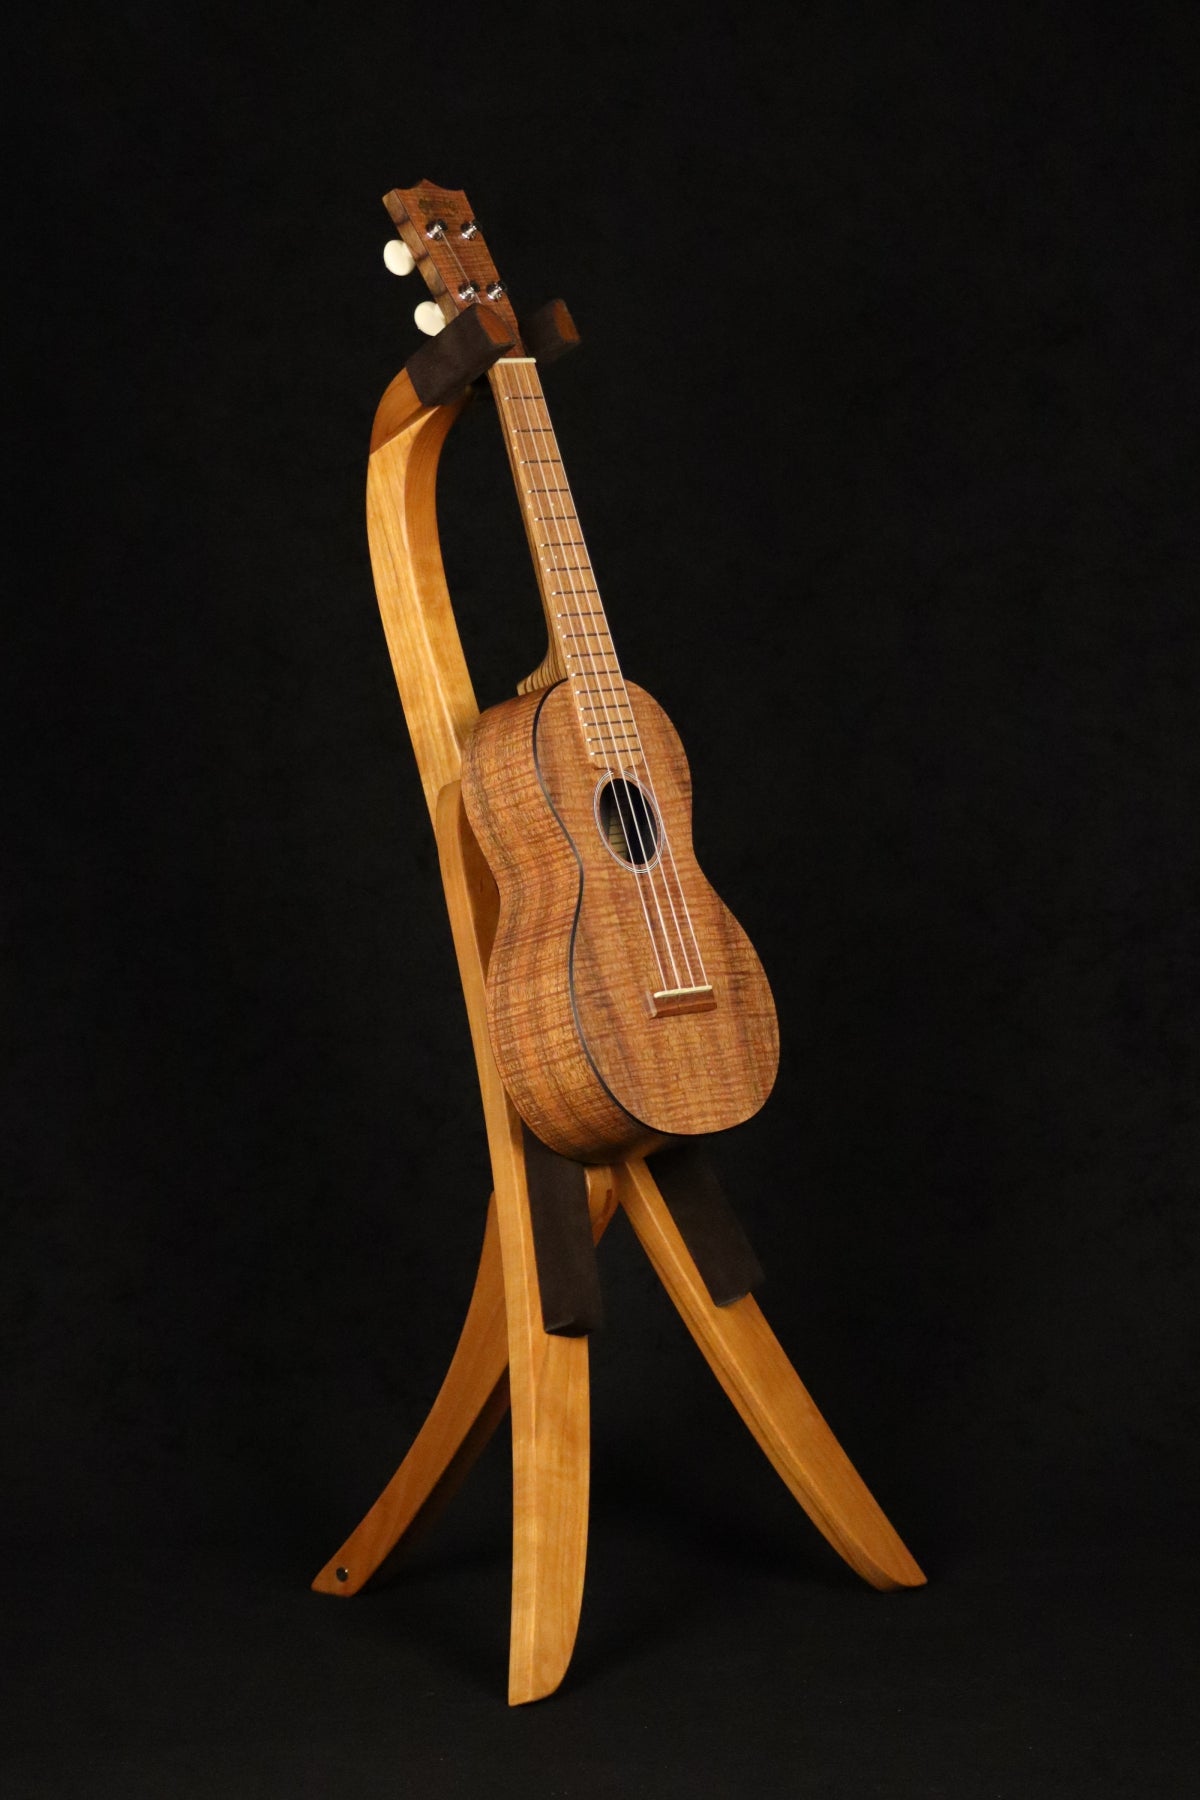 Folding cherry wood ukulele floor stand full front image with Martin ukulele